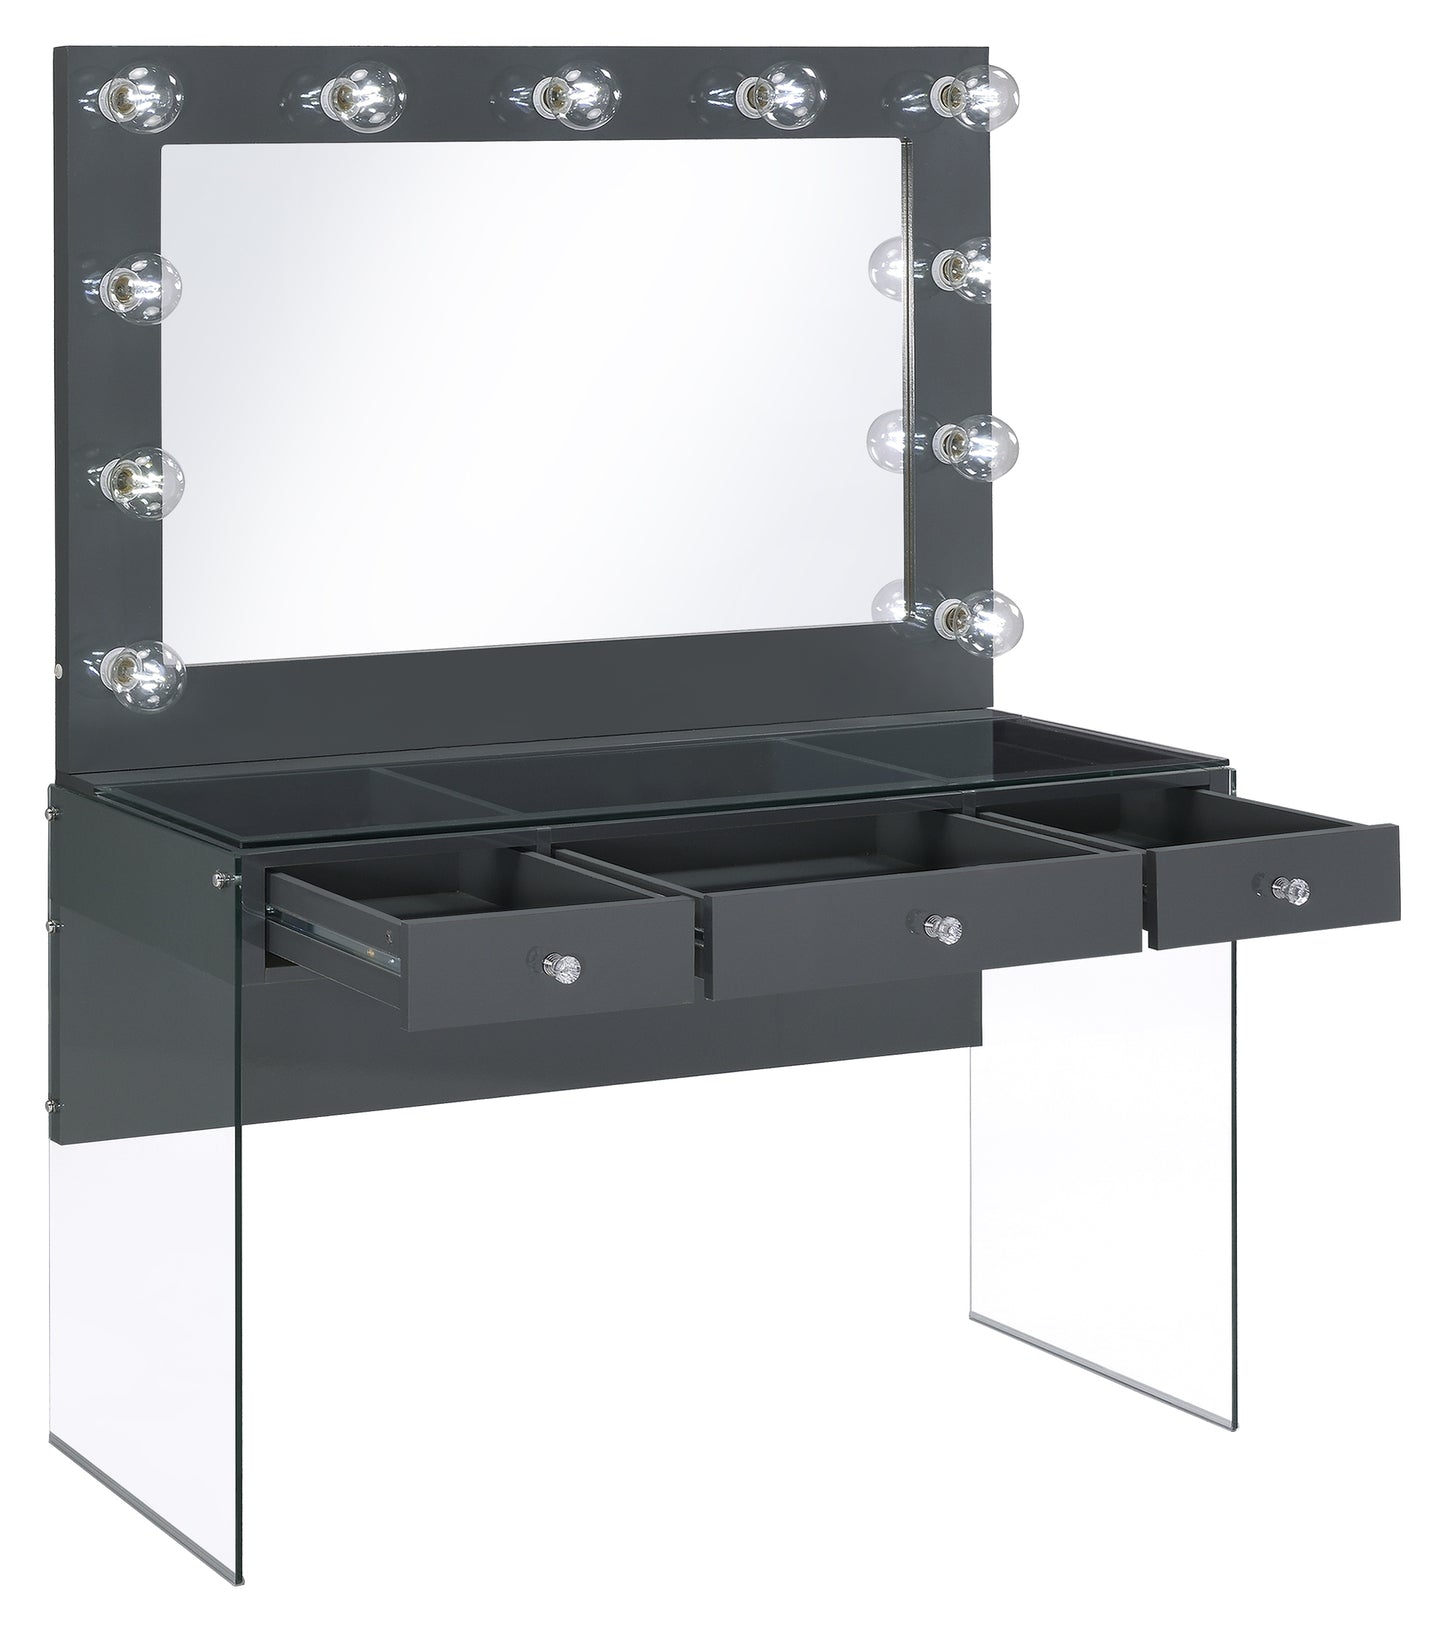 vanity table & mirror